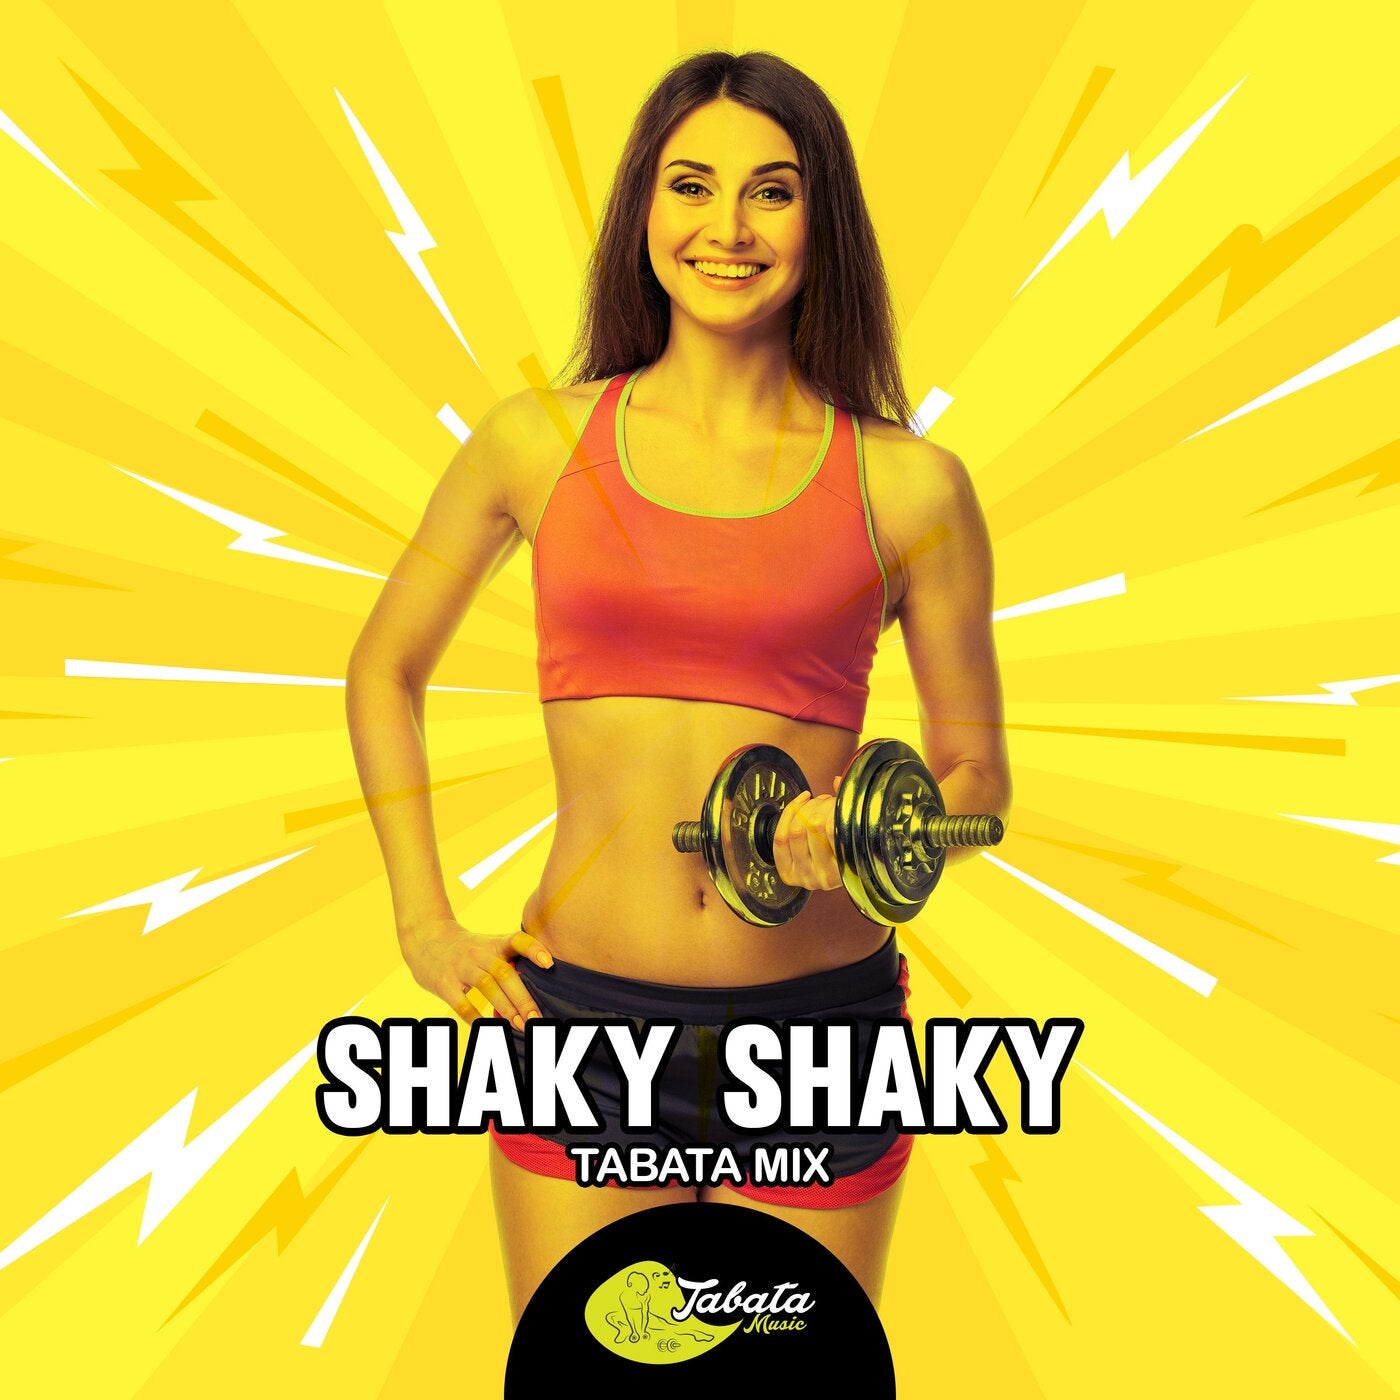 Shaky Shaky (Tabata Mix) by Tabata on Beatport